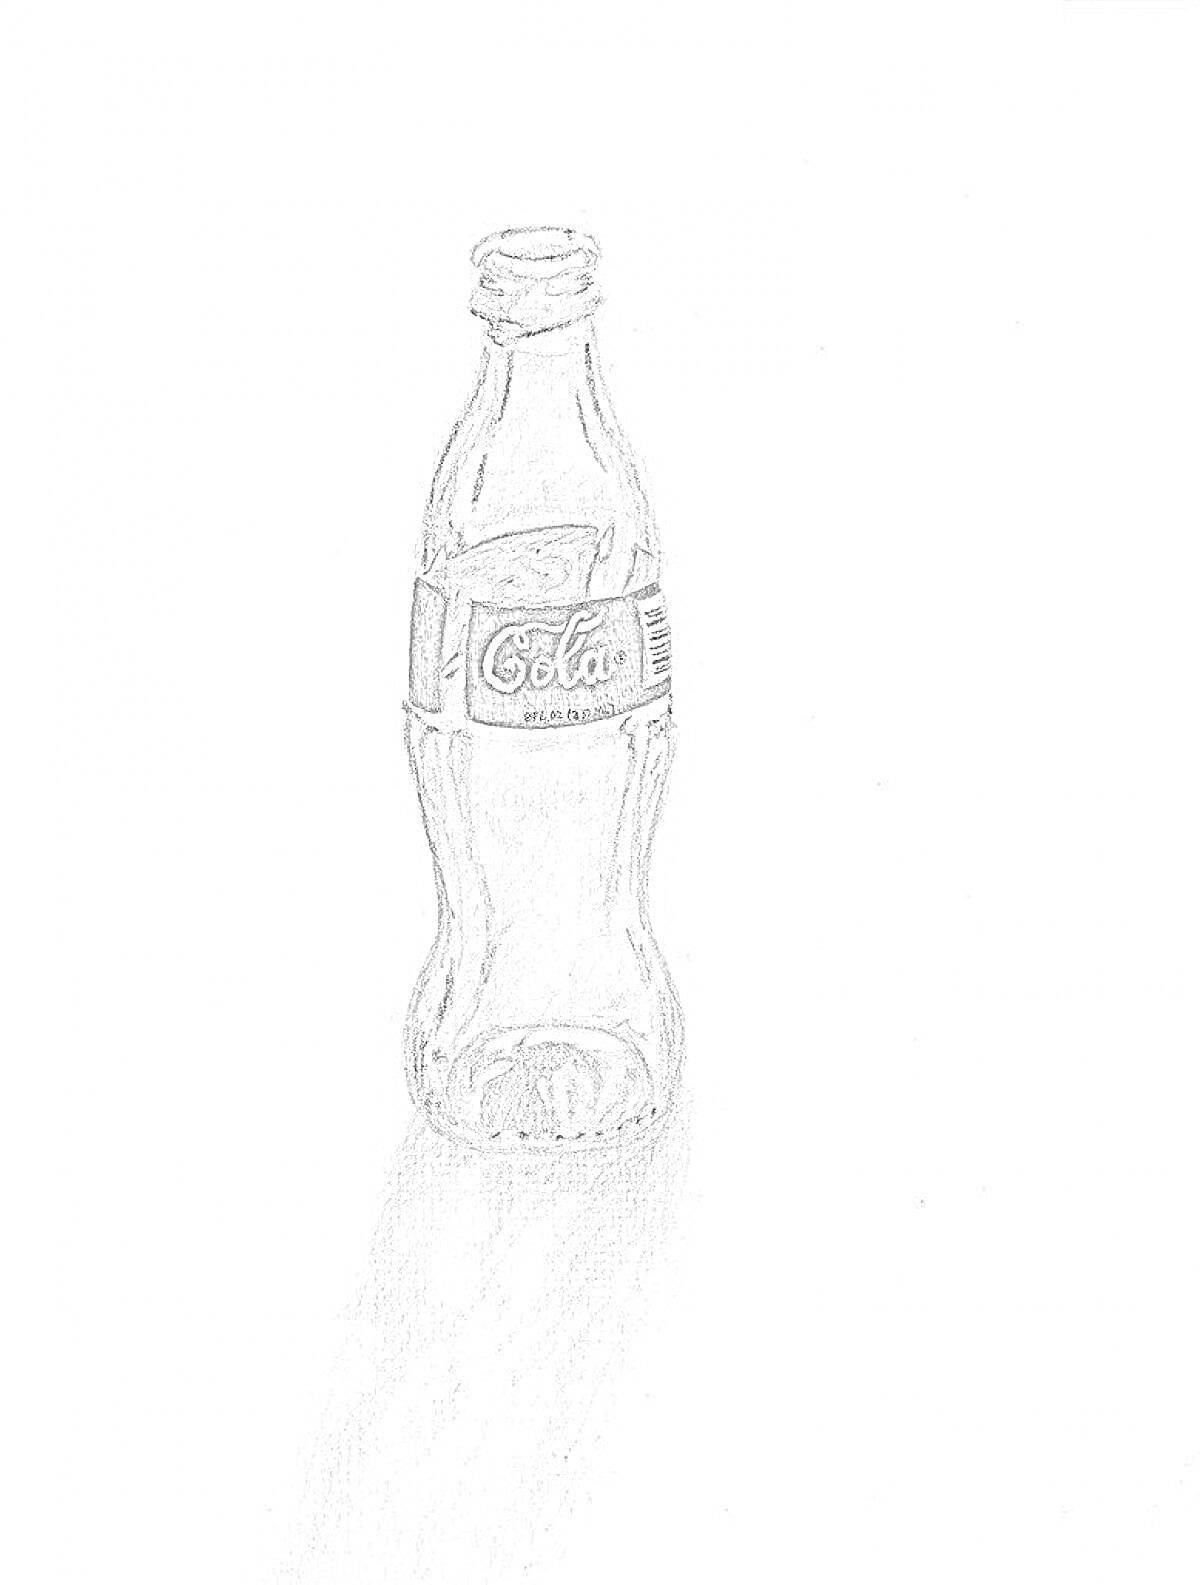 Раскраска Пустая стеклянная бутылка от кока-колы, с этикеткой, на черно-белом рисунке.